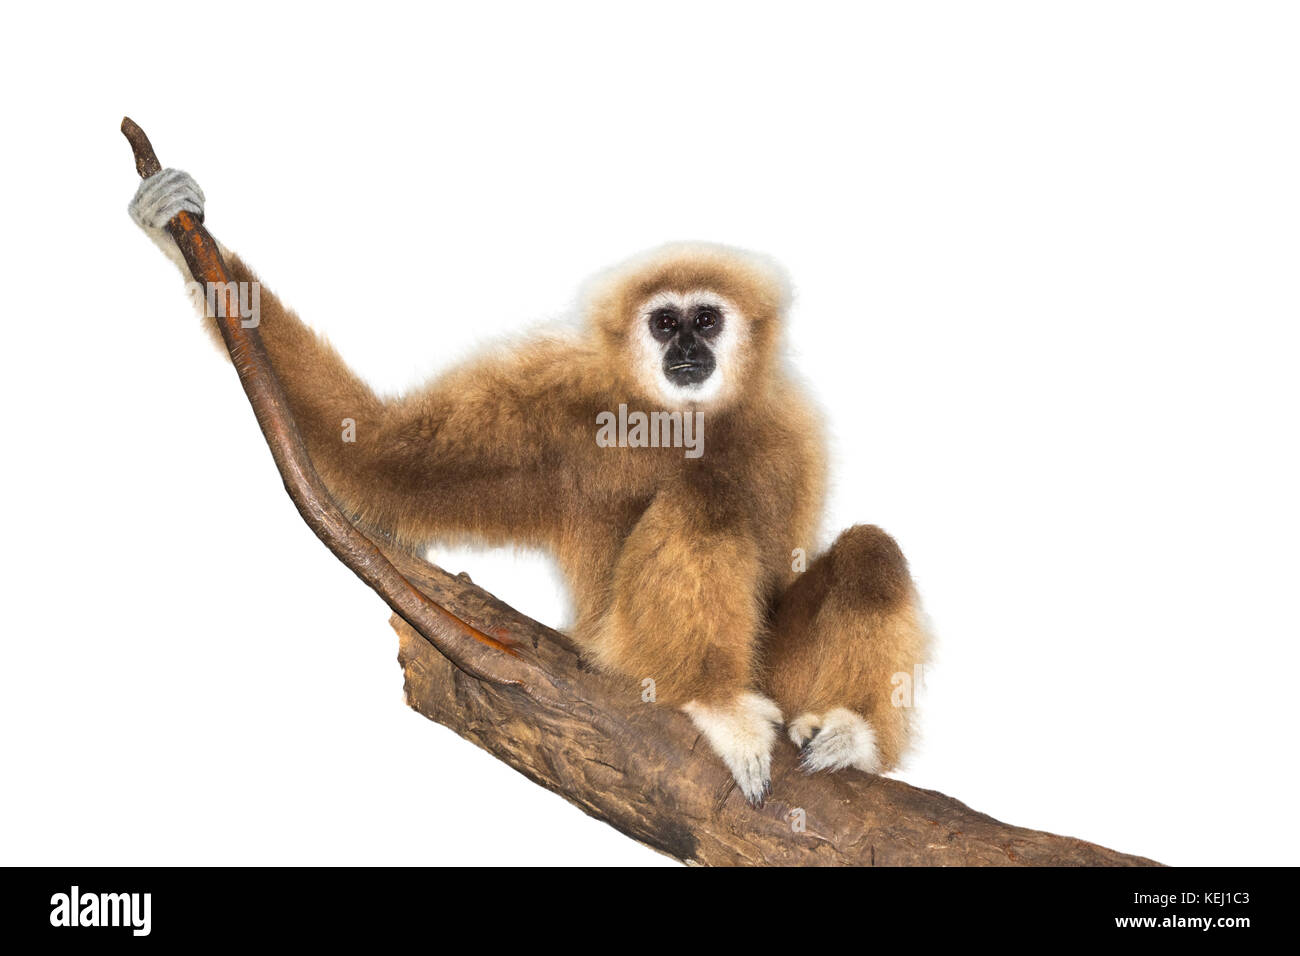 Lar, or white-handed gibbon (Hylobates lar), captive, isolated on white background. Stock Photo